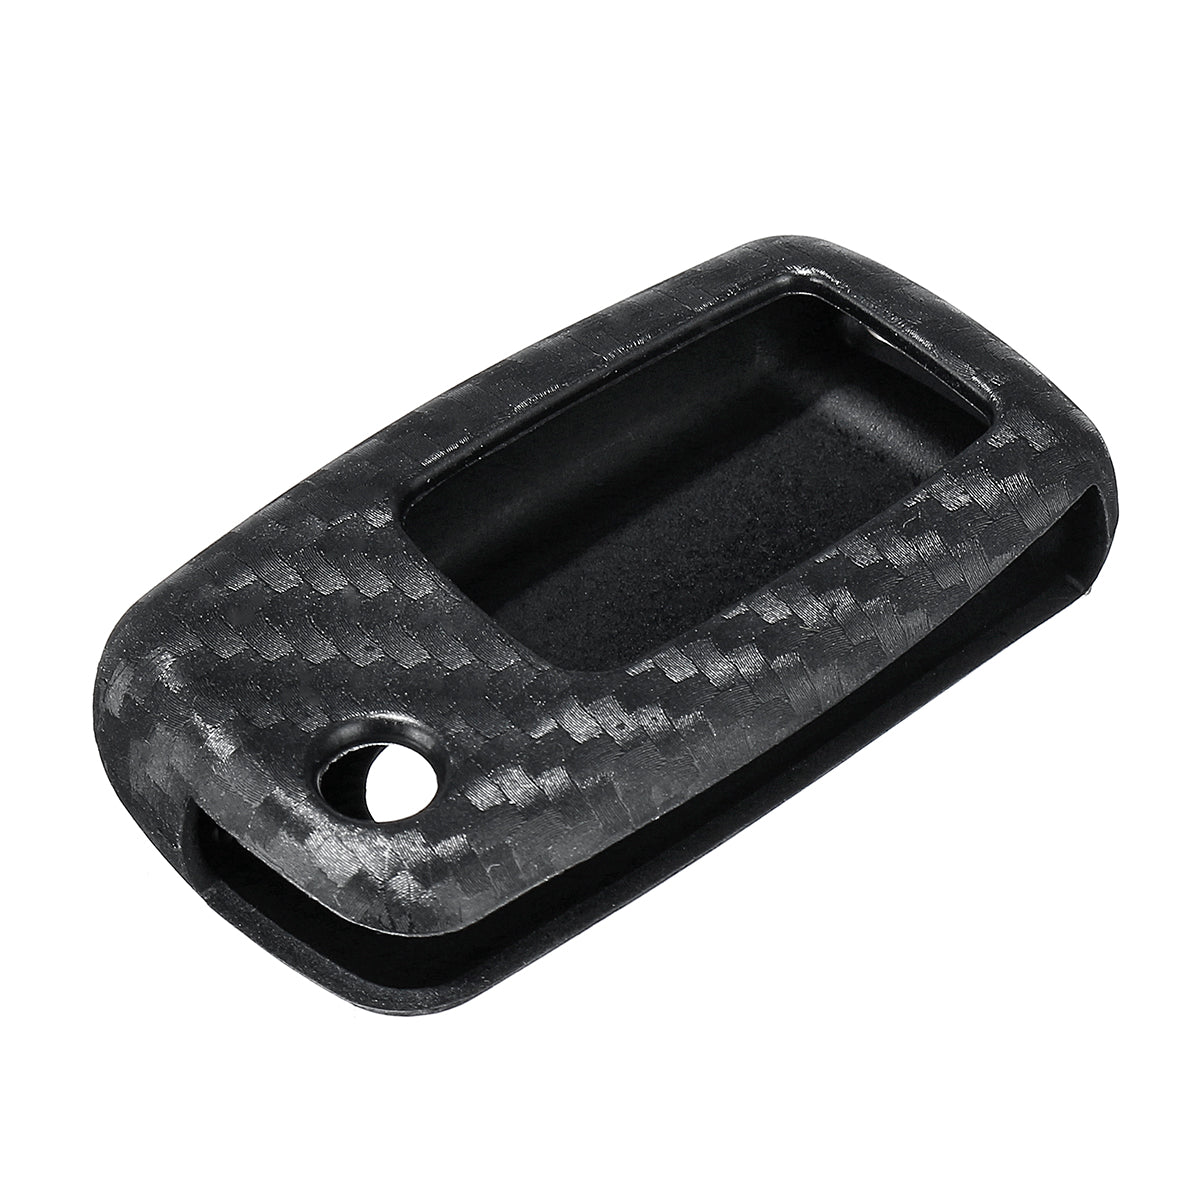 Dark Slate Gray Carbon Fiber Color Silicone Remote Smart Key Case Cover Fob For Seat Altea Ibiza VW Passat Jetta (1)